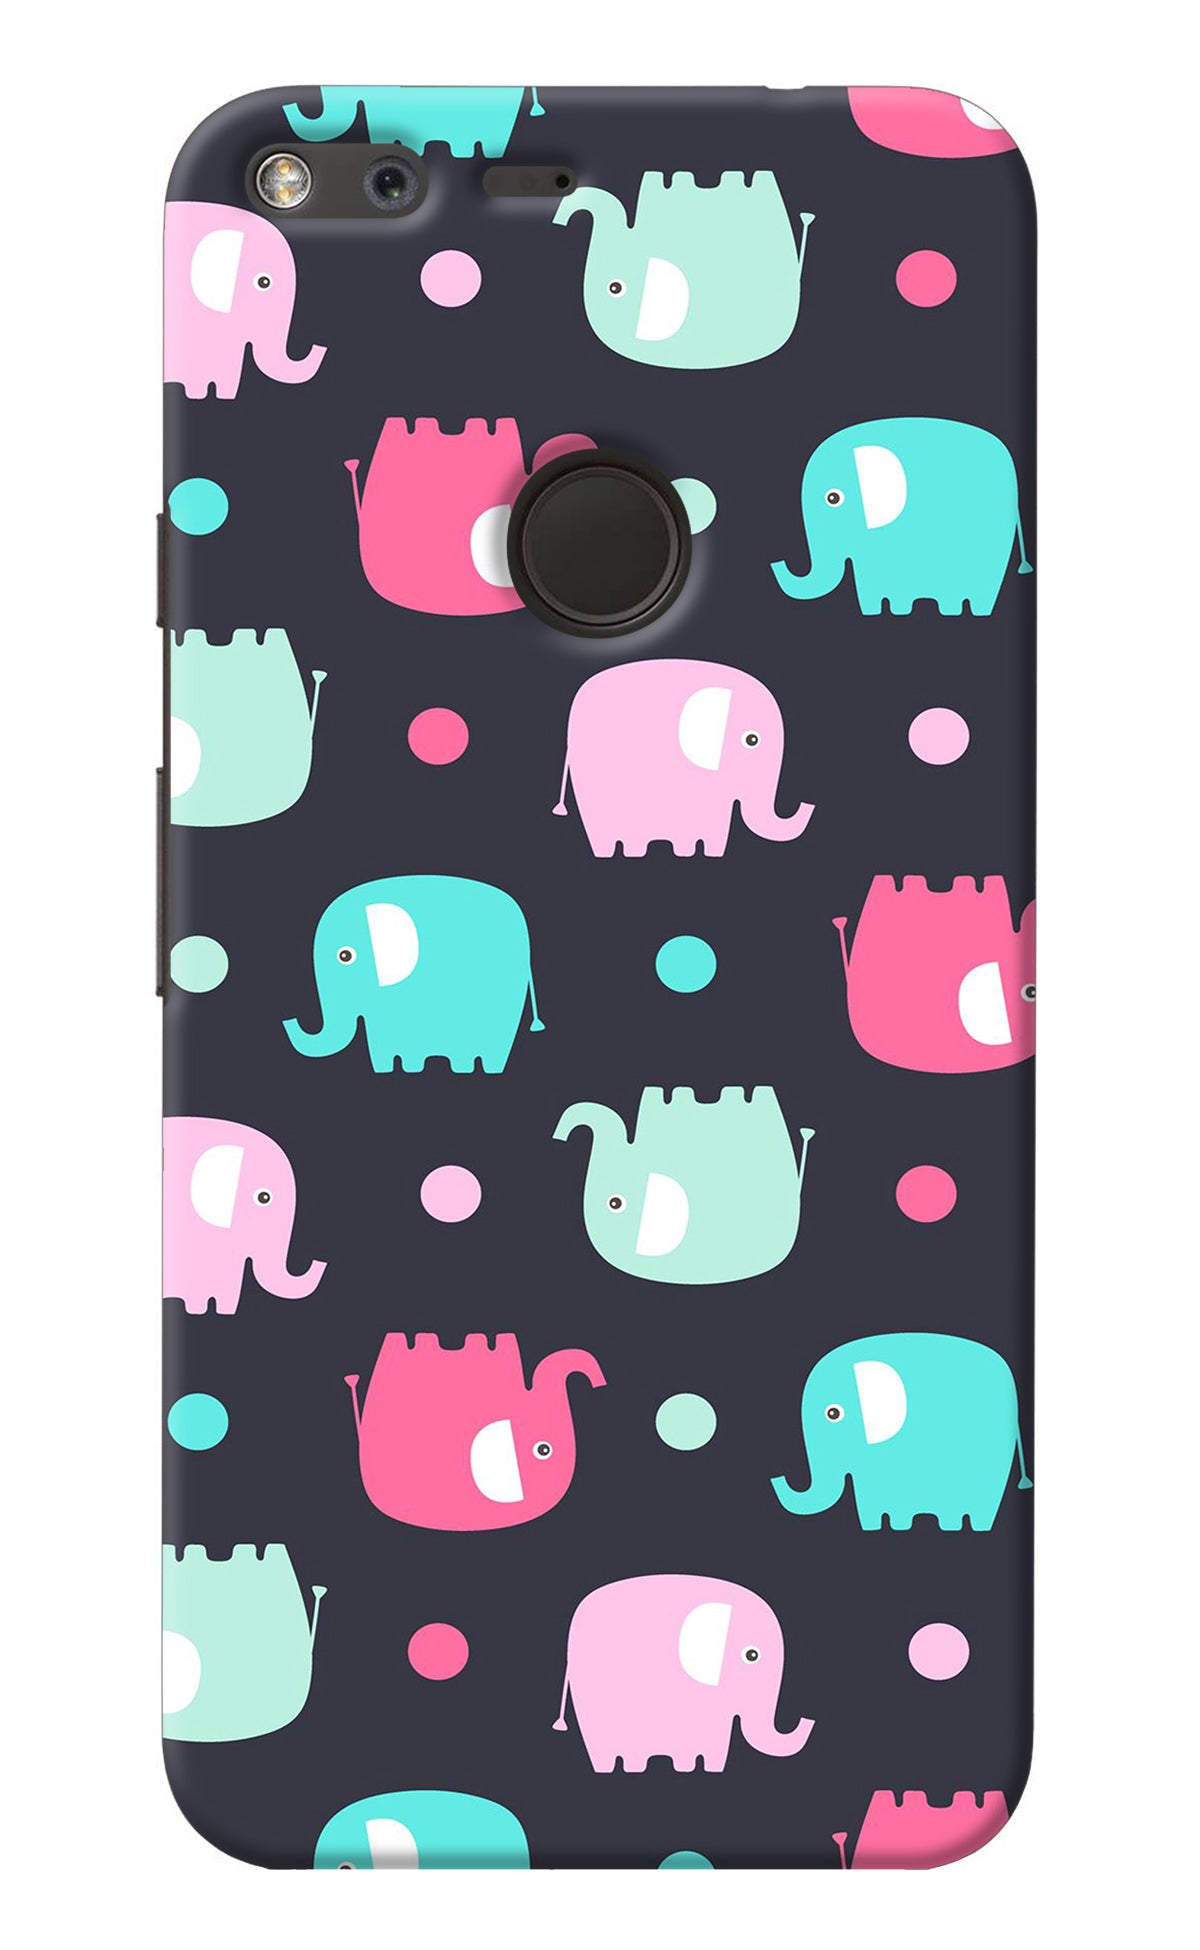 Elephants Google Pixel XL Back Cover